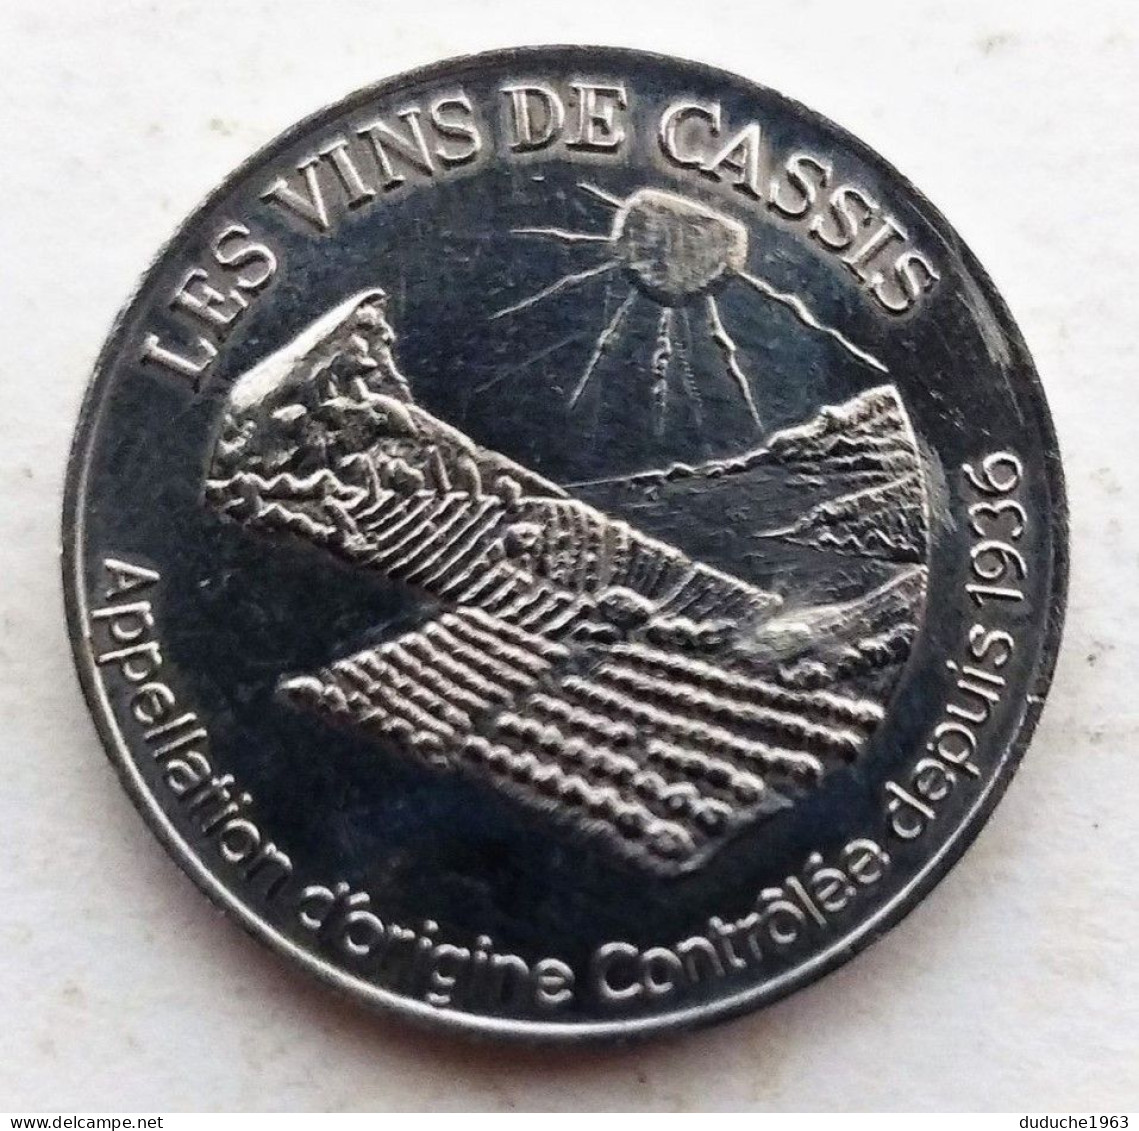 Euro Des Villes/Temporaire - Cassis - 3 Euros 1997 - Euro Delle Città